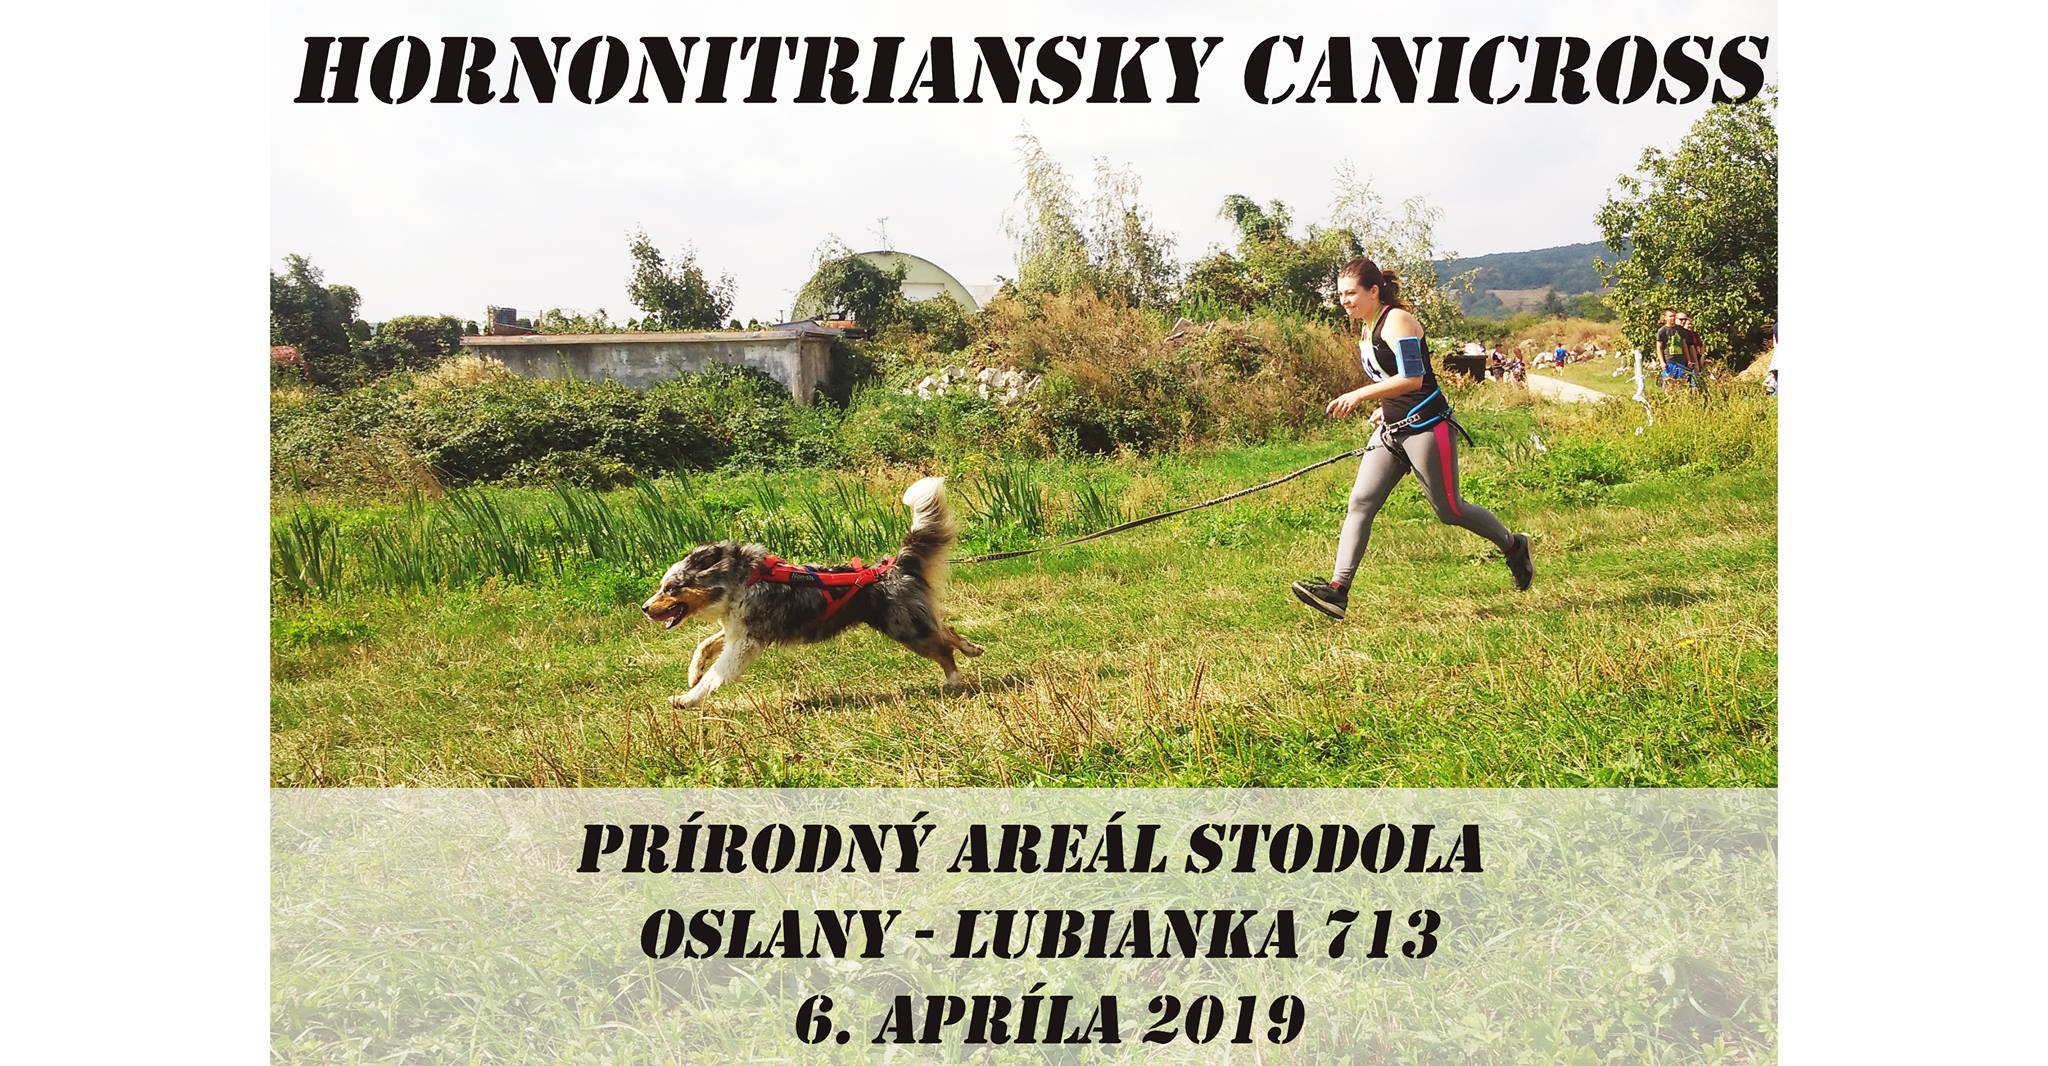 Hornonitriansky canicross Oslany 2019